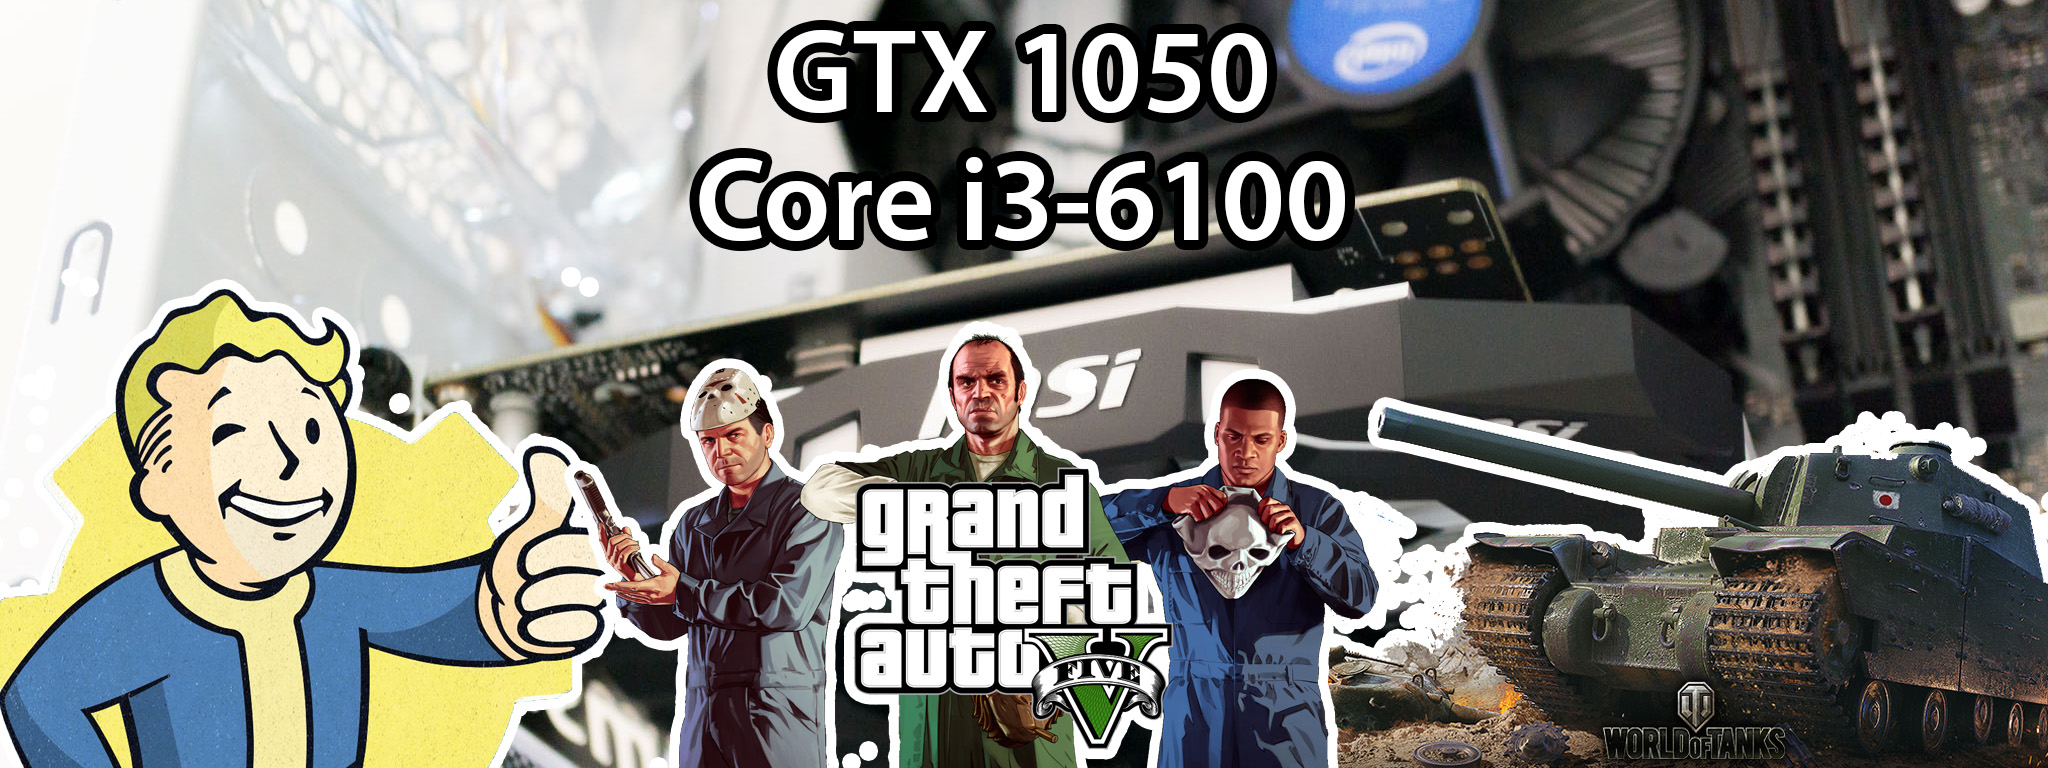 Ráp và review máy tính chơi game 13,5 triệu: GTX 1050, GTA V 60 fps, Battlefield 1 60 fps